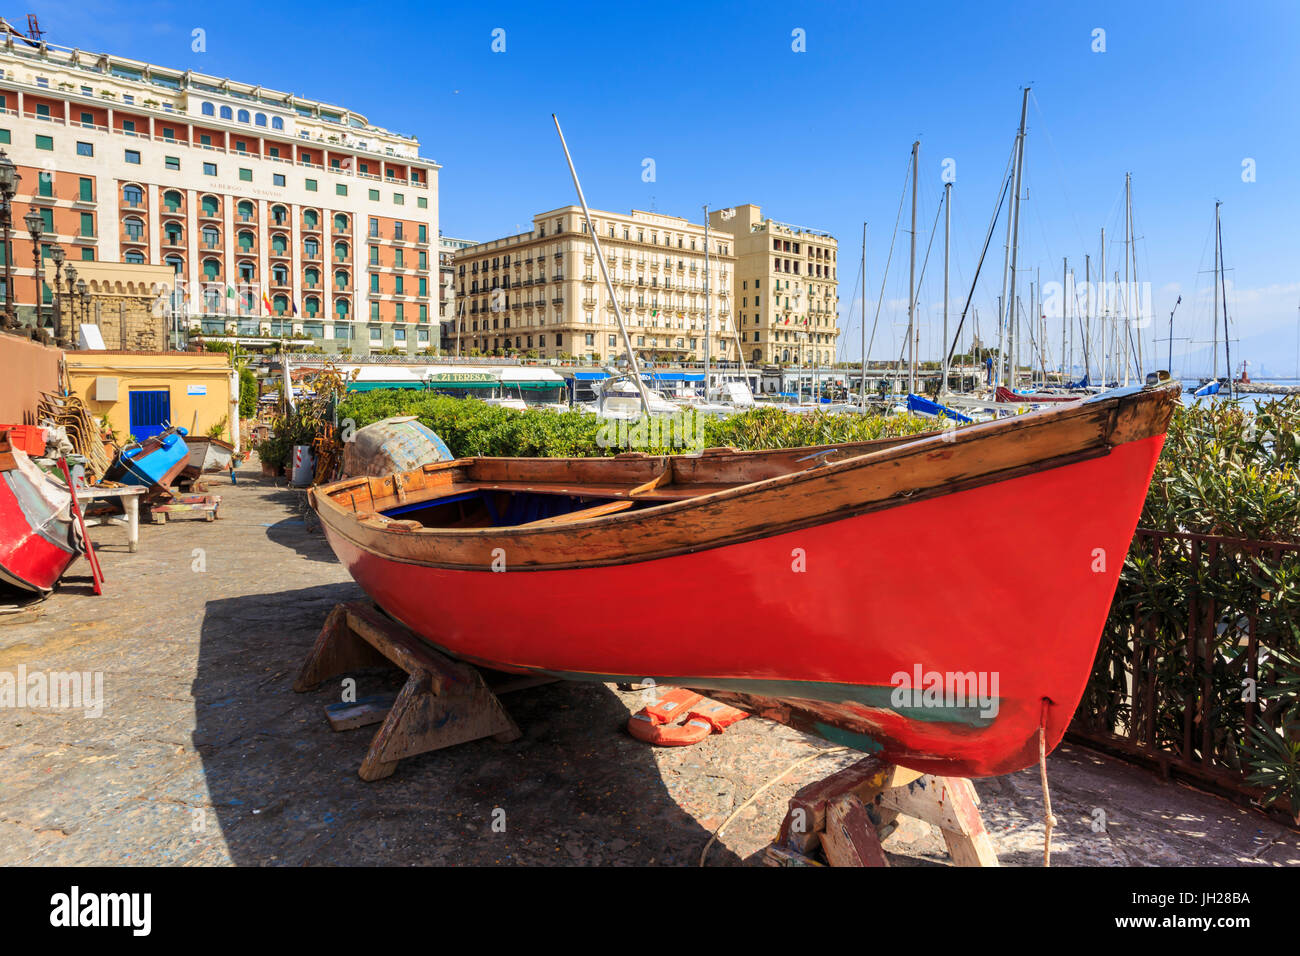 Coloridos botes a remo en reparación en el marina Borgo Marinaro, con el telón de fondo de grandes hoteles, Chiaia, Ciudad de Nápoles, Italia Foto de stock